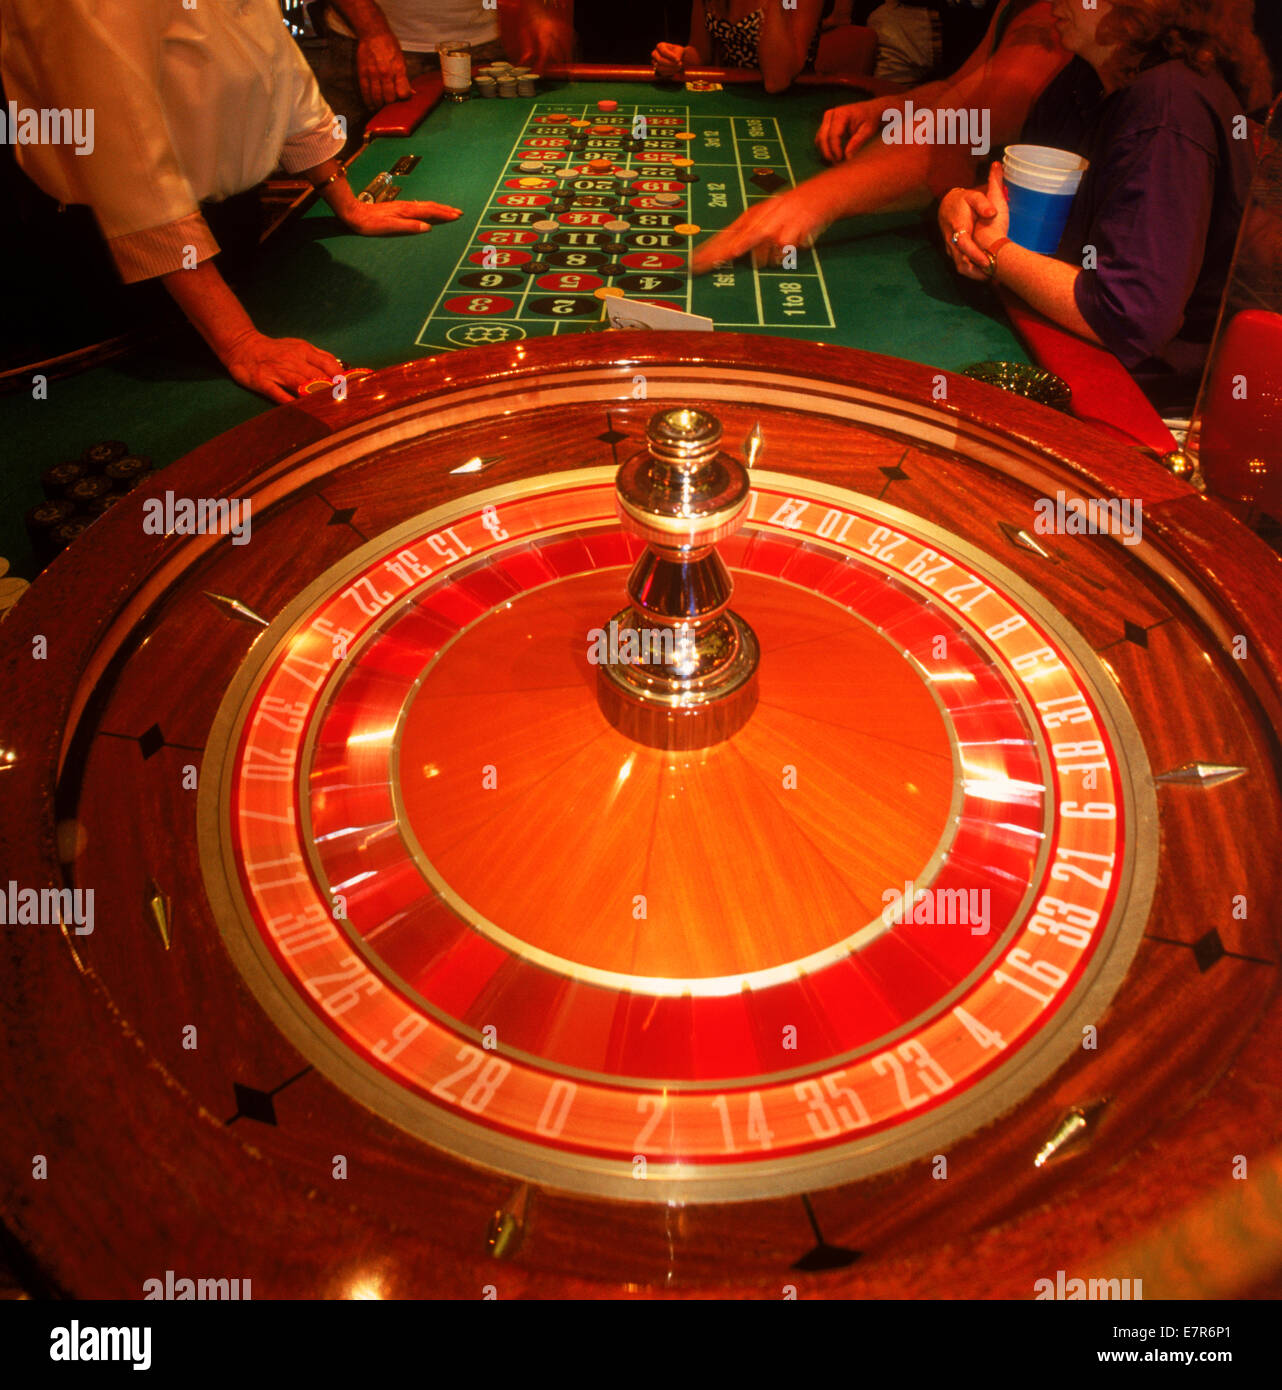 Gambling Game With Spinning Wheel